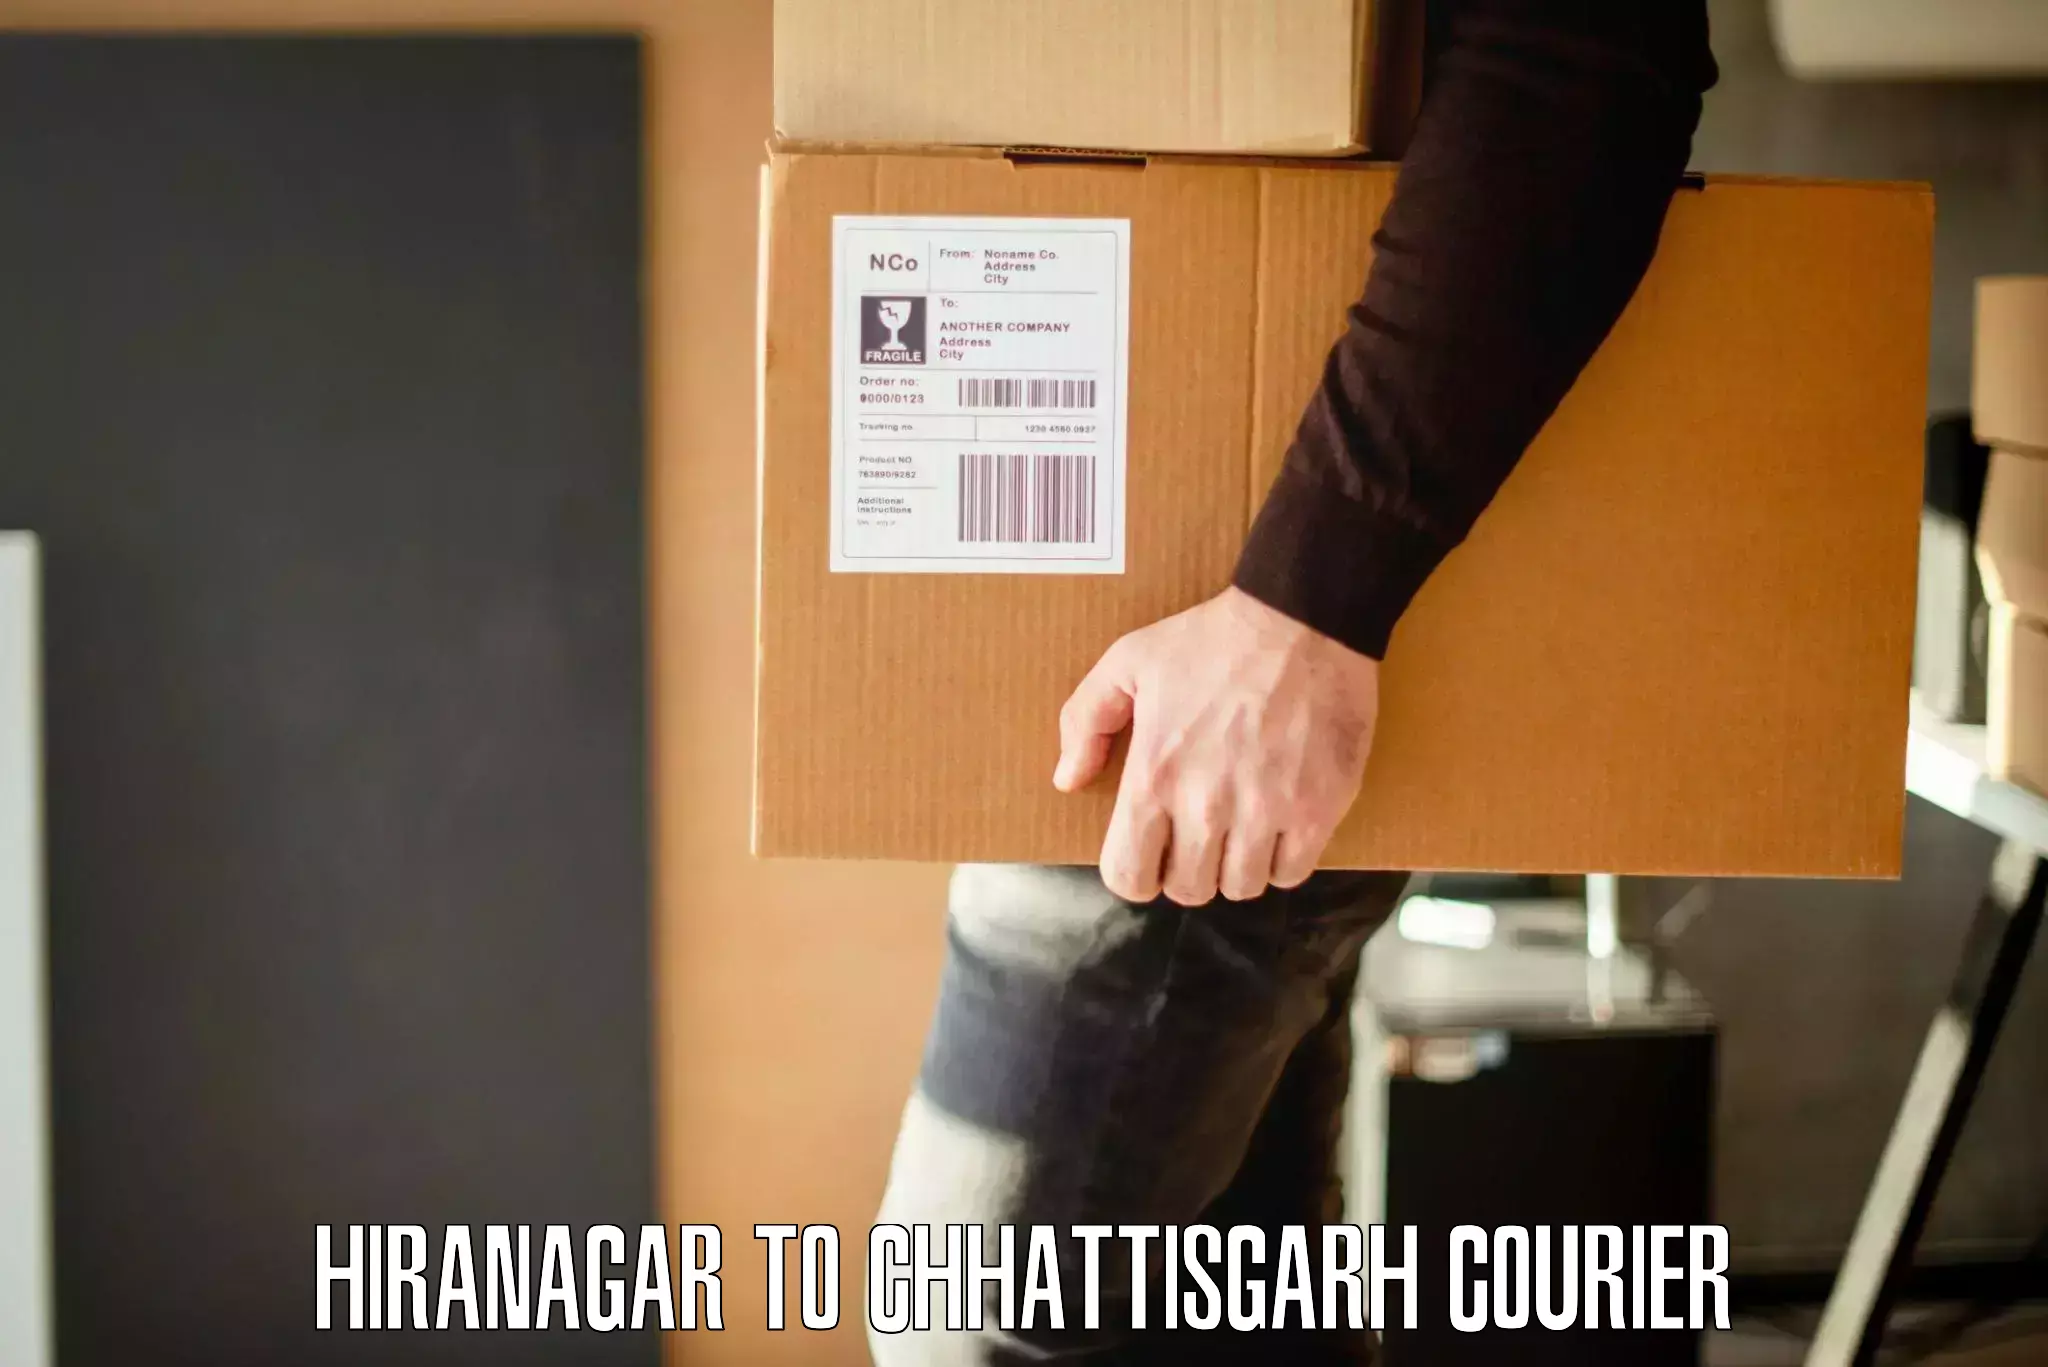 Personalized moving service Hiranagar to Berla